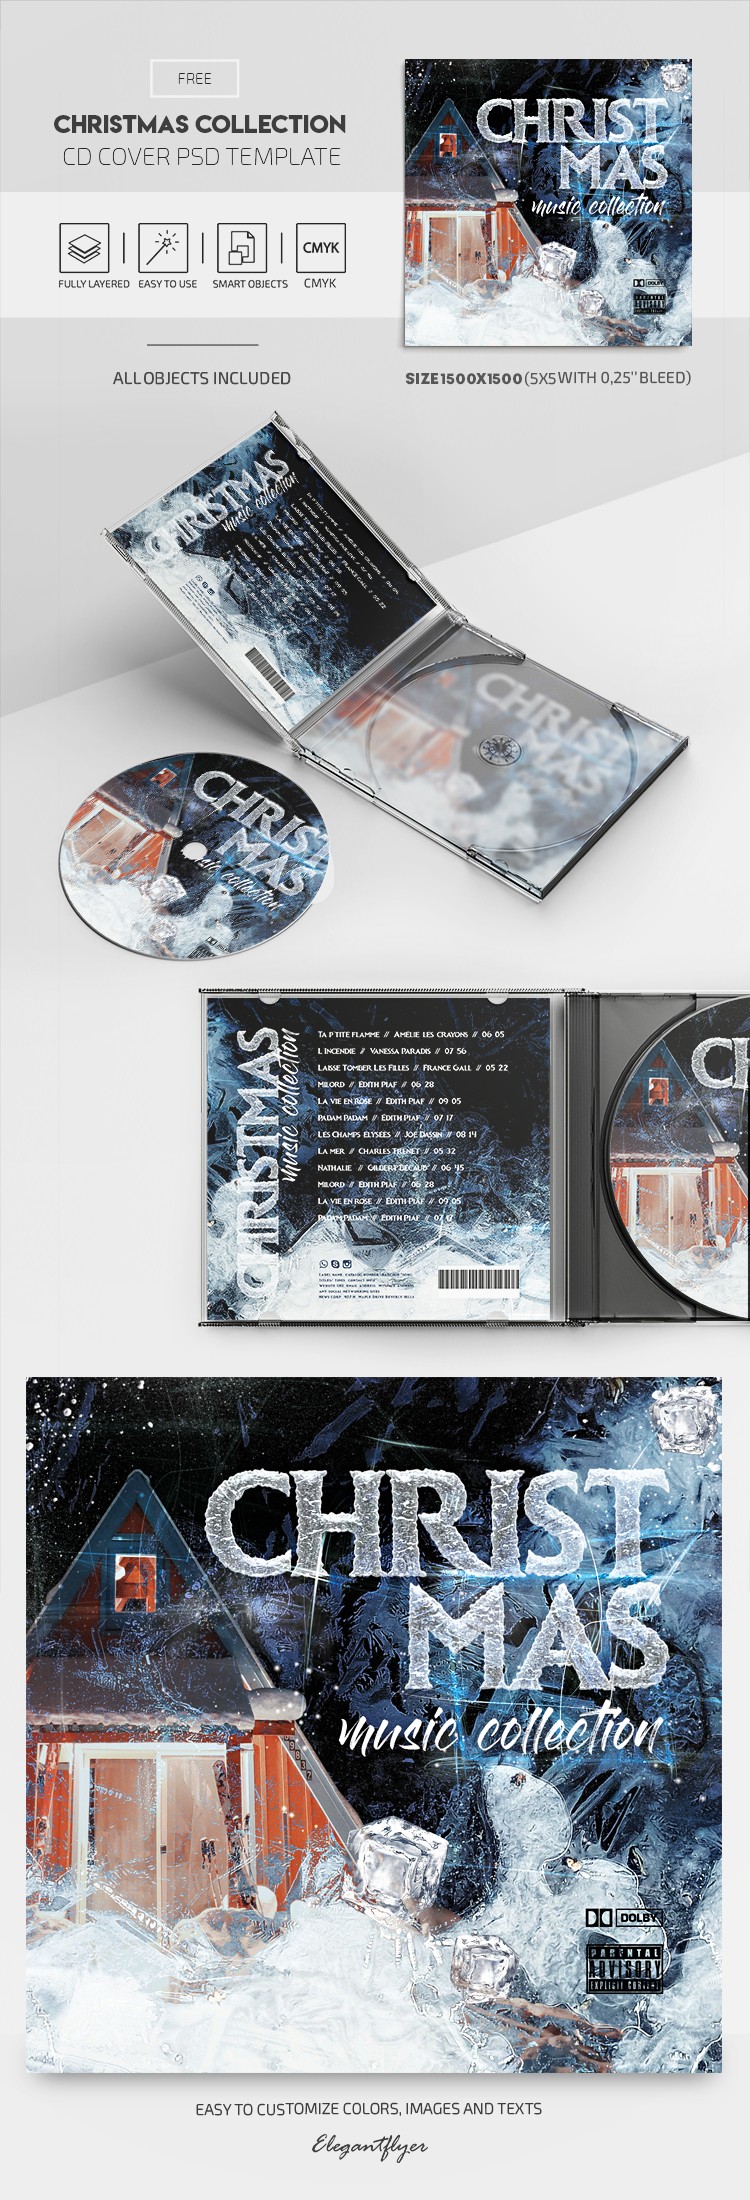 Weihnachtssammlung CD-Cover by ElegantFlyer